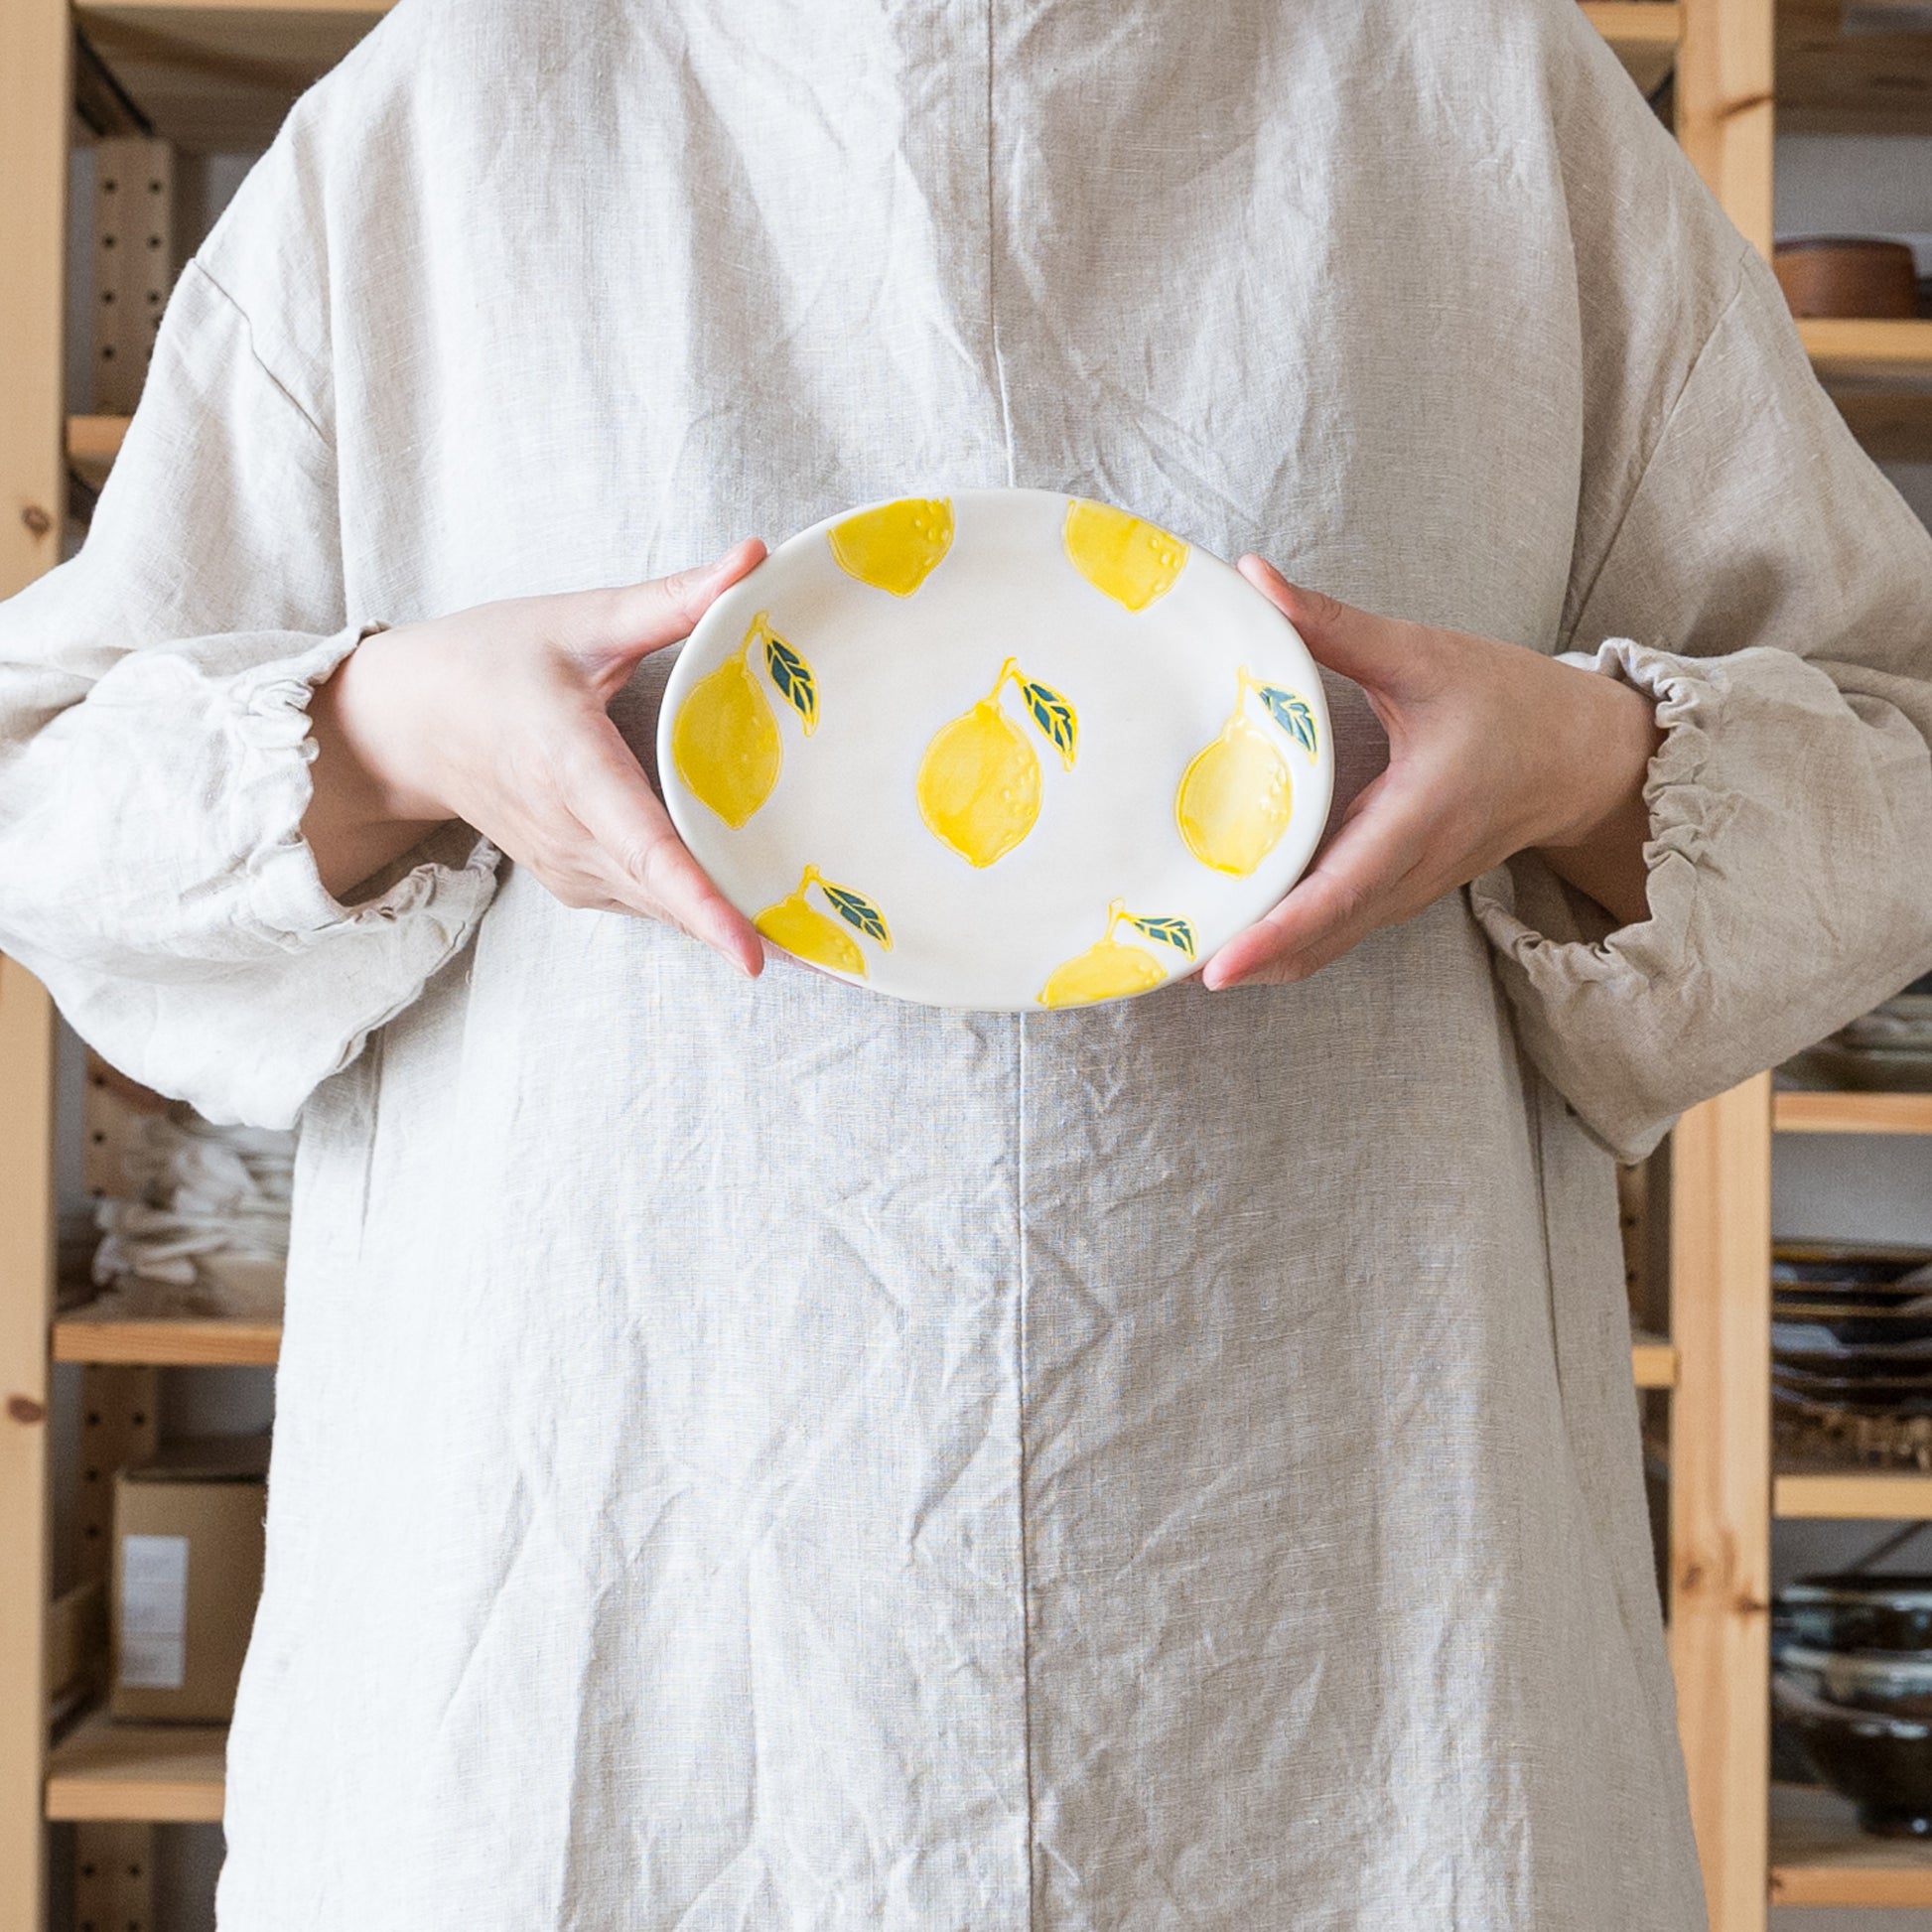 テーブルを明るく彩ってくれるかわいいレモン柄の波佐見焼楕円皿